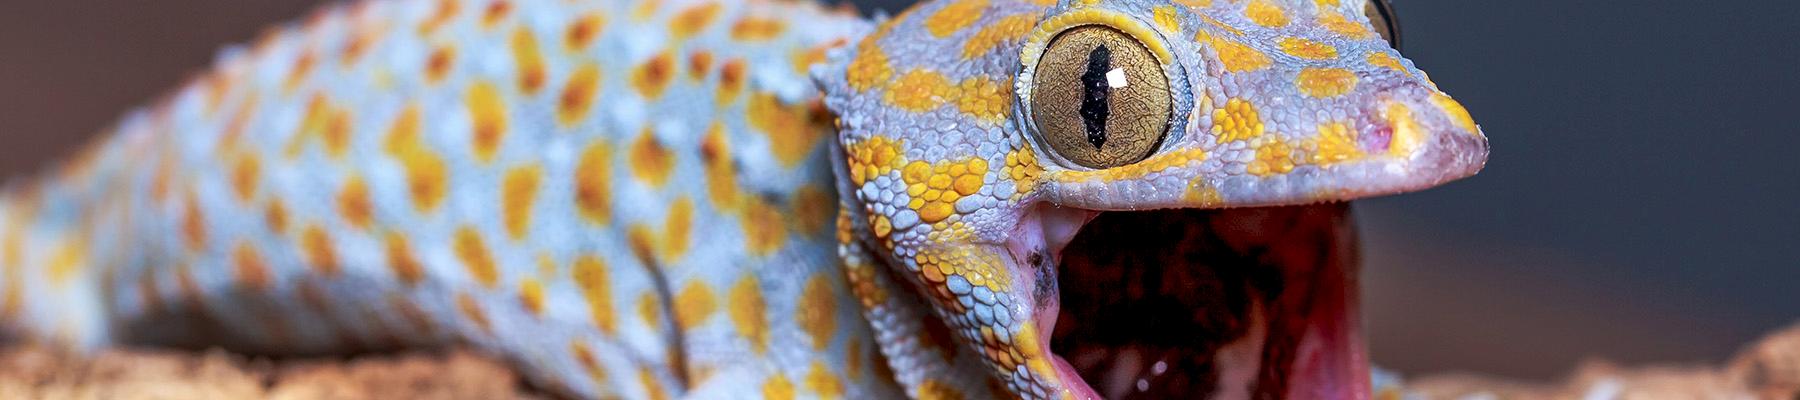 Tokay Gecko © Reptiles Plus / Generic CC 2.0